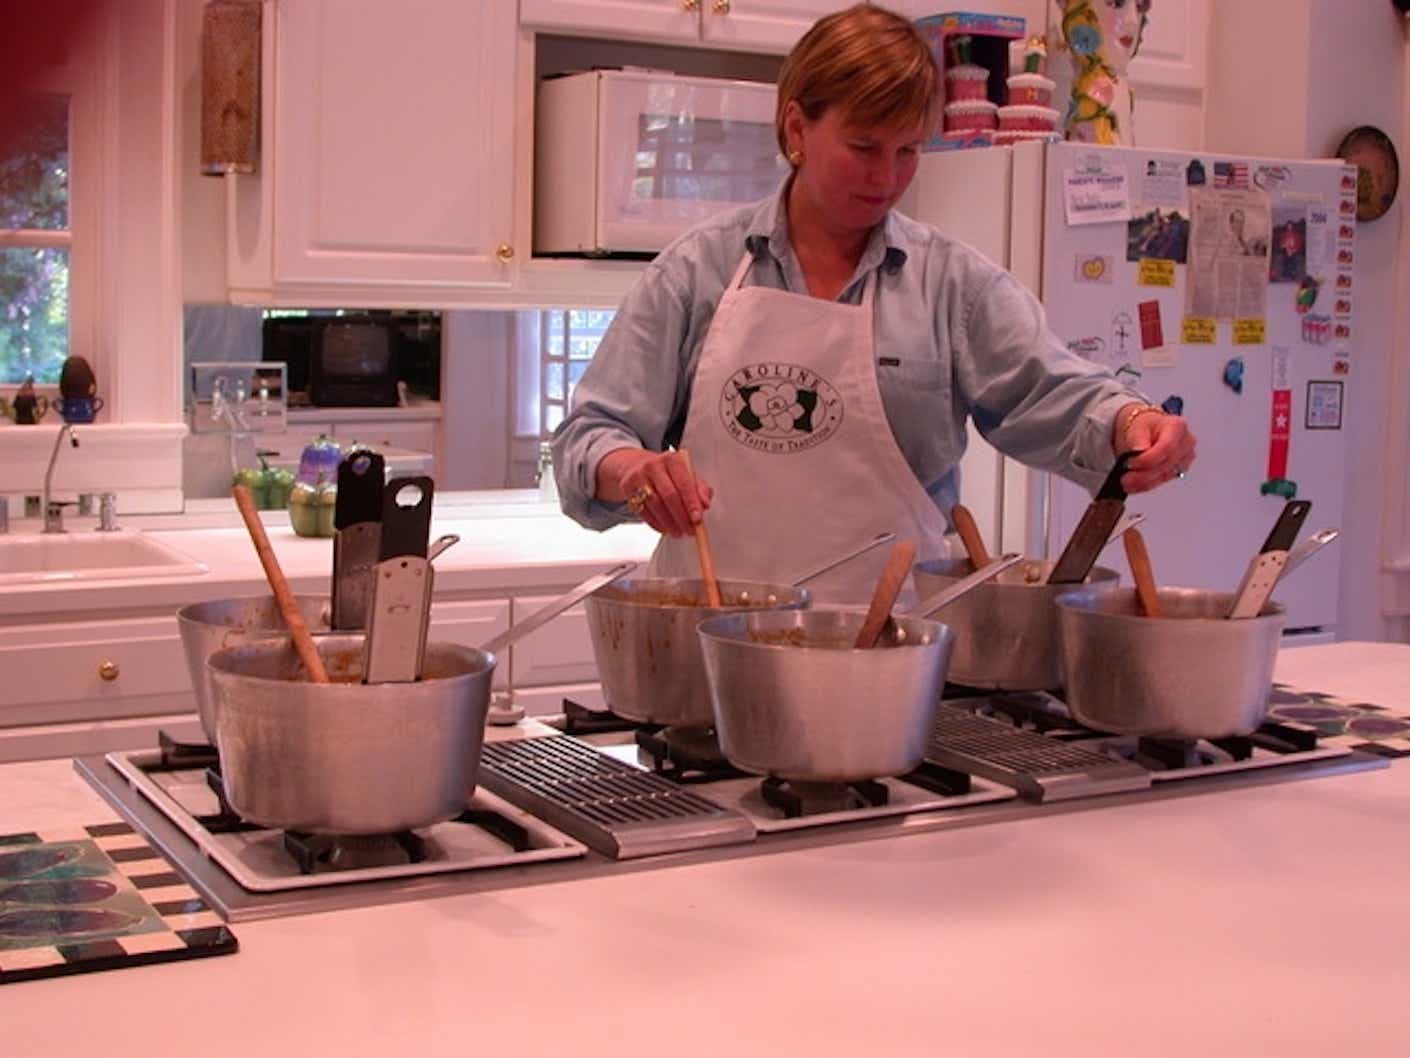 Caroline Ragsdale Reutter, owner of Caroline's Cakes, baking in her kitchen